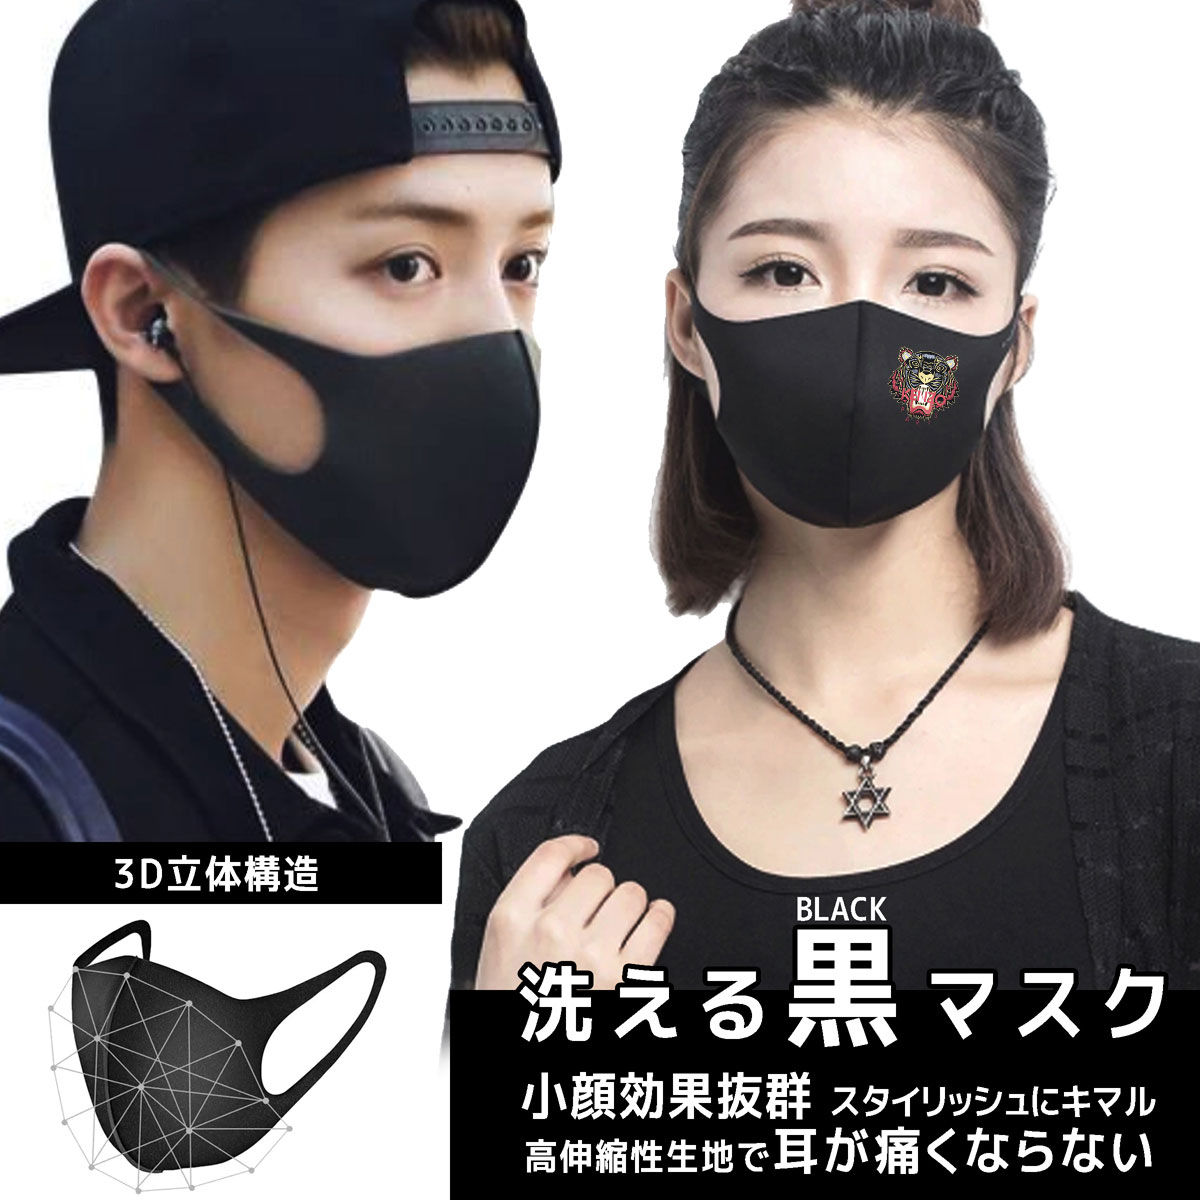 ブランド風KENZOマスクロゴ刺繍 多機能 3D立体マスク小颜 黒マスク